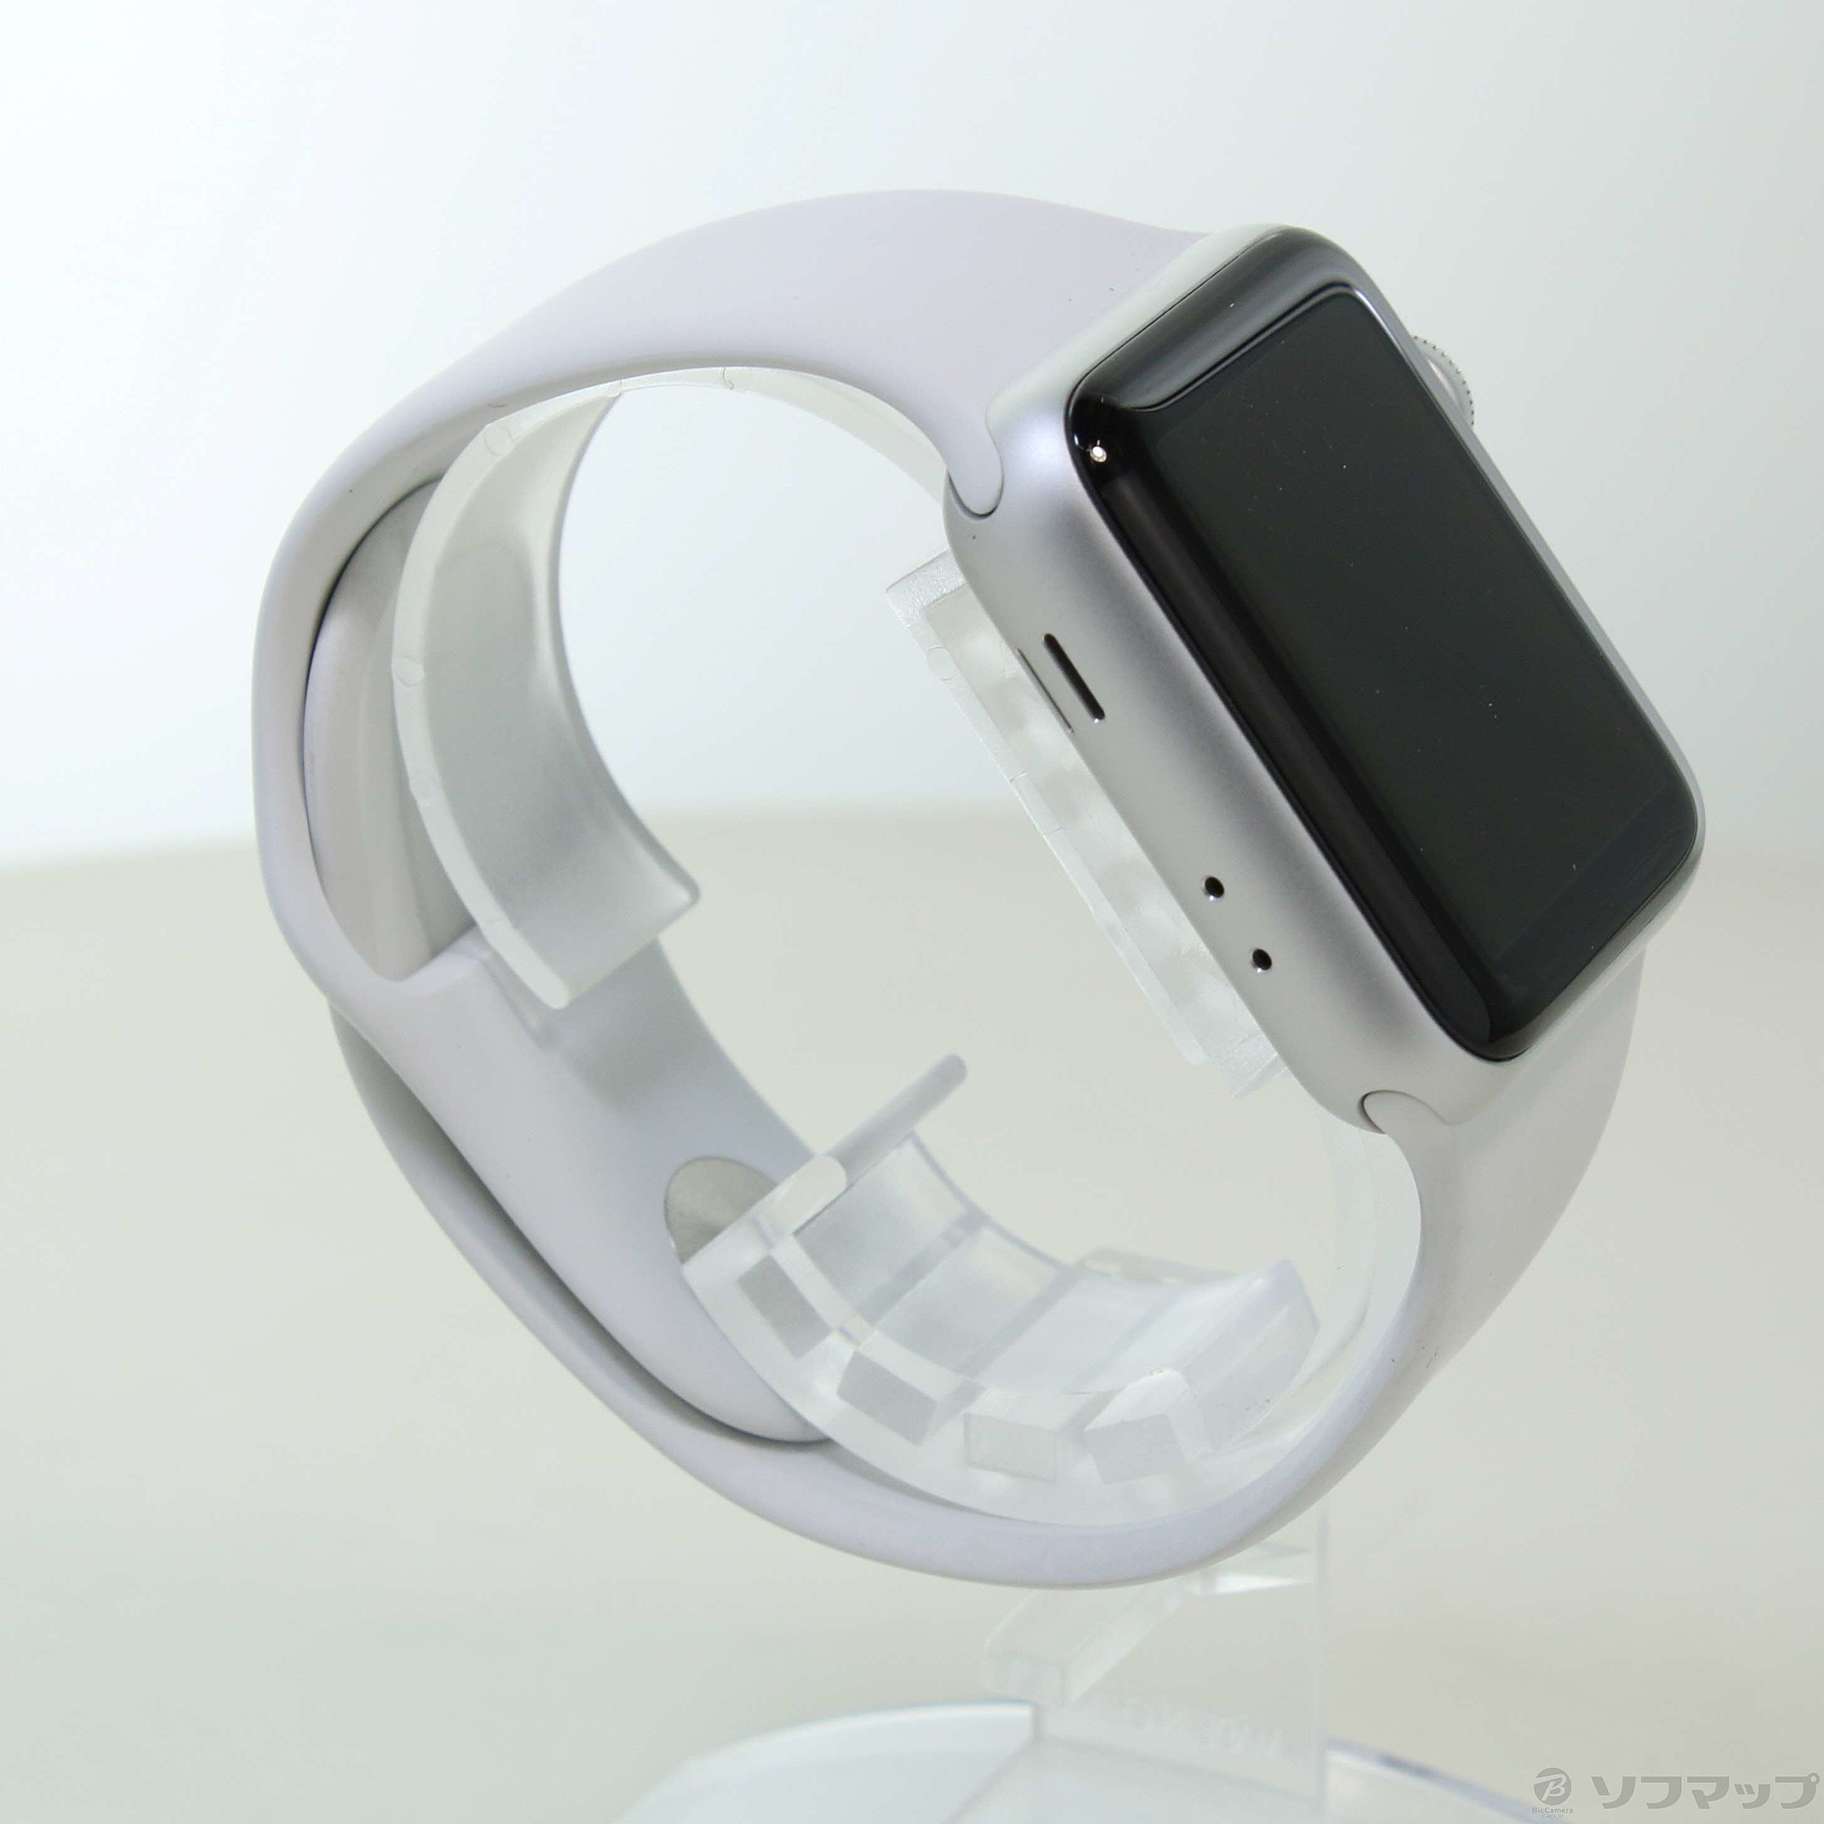 中古】〔展示品〕 Apple Watch Series 3 GPS 38mm シルバー